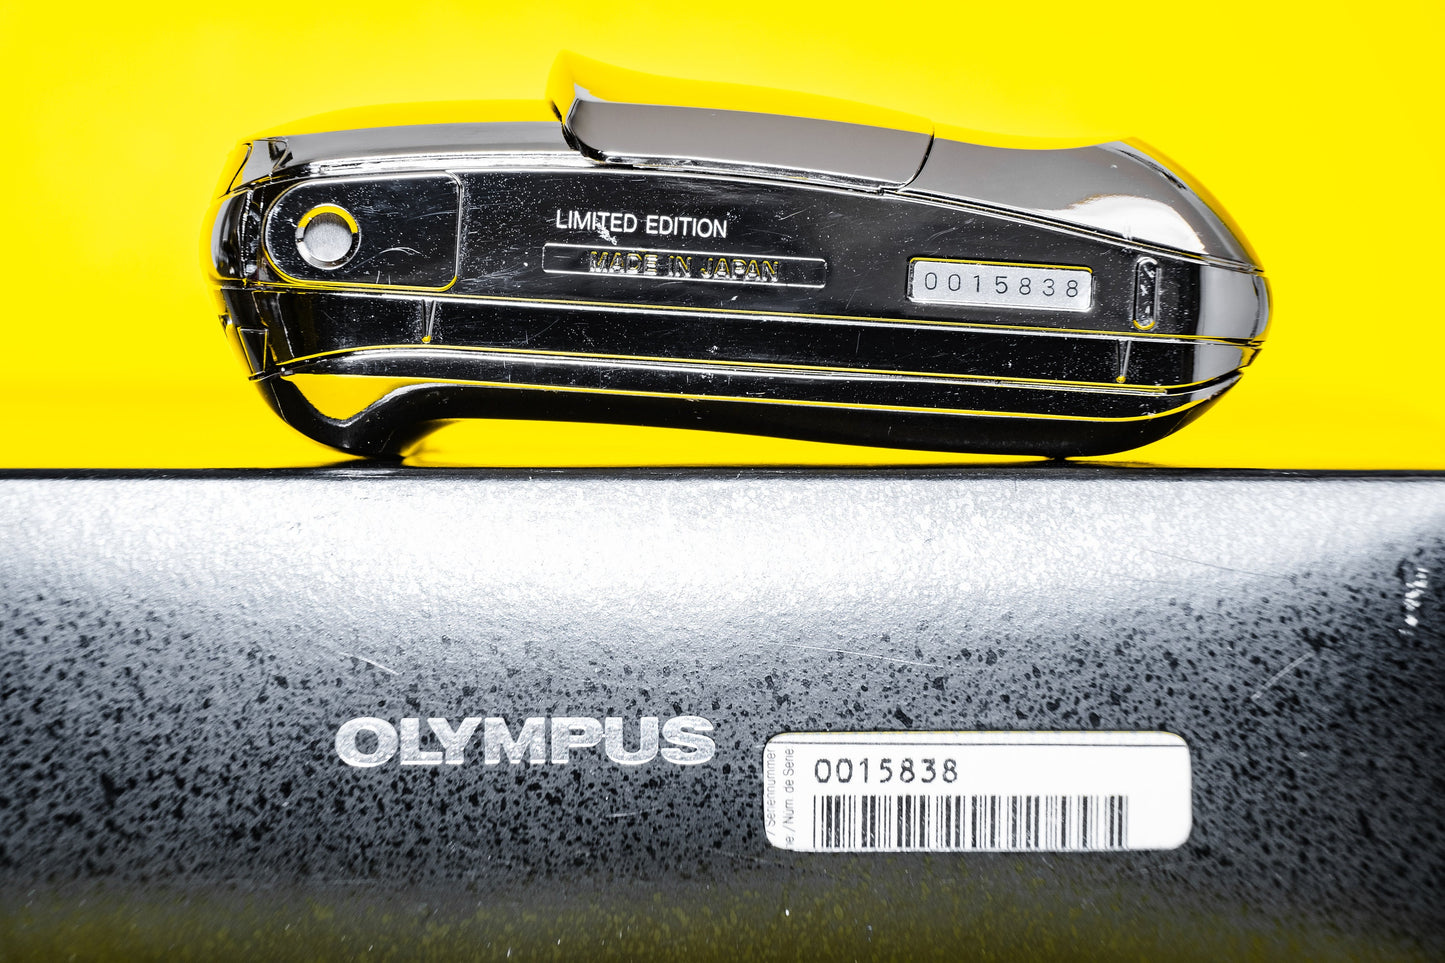 OLYMPUS MJU 1 Limited Edition